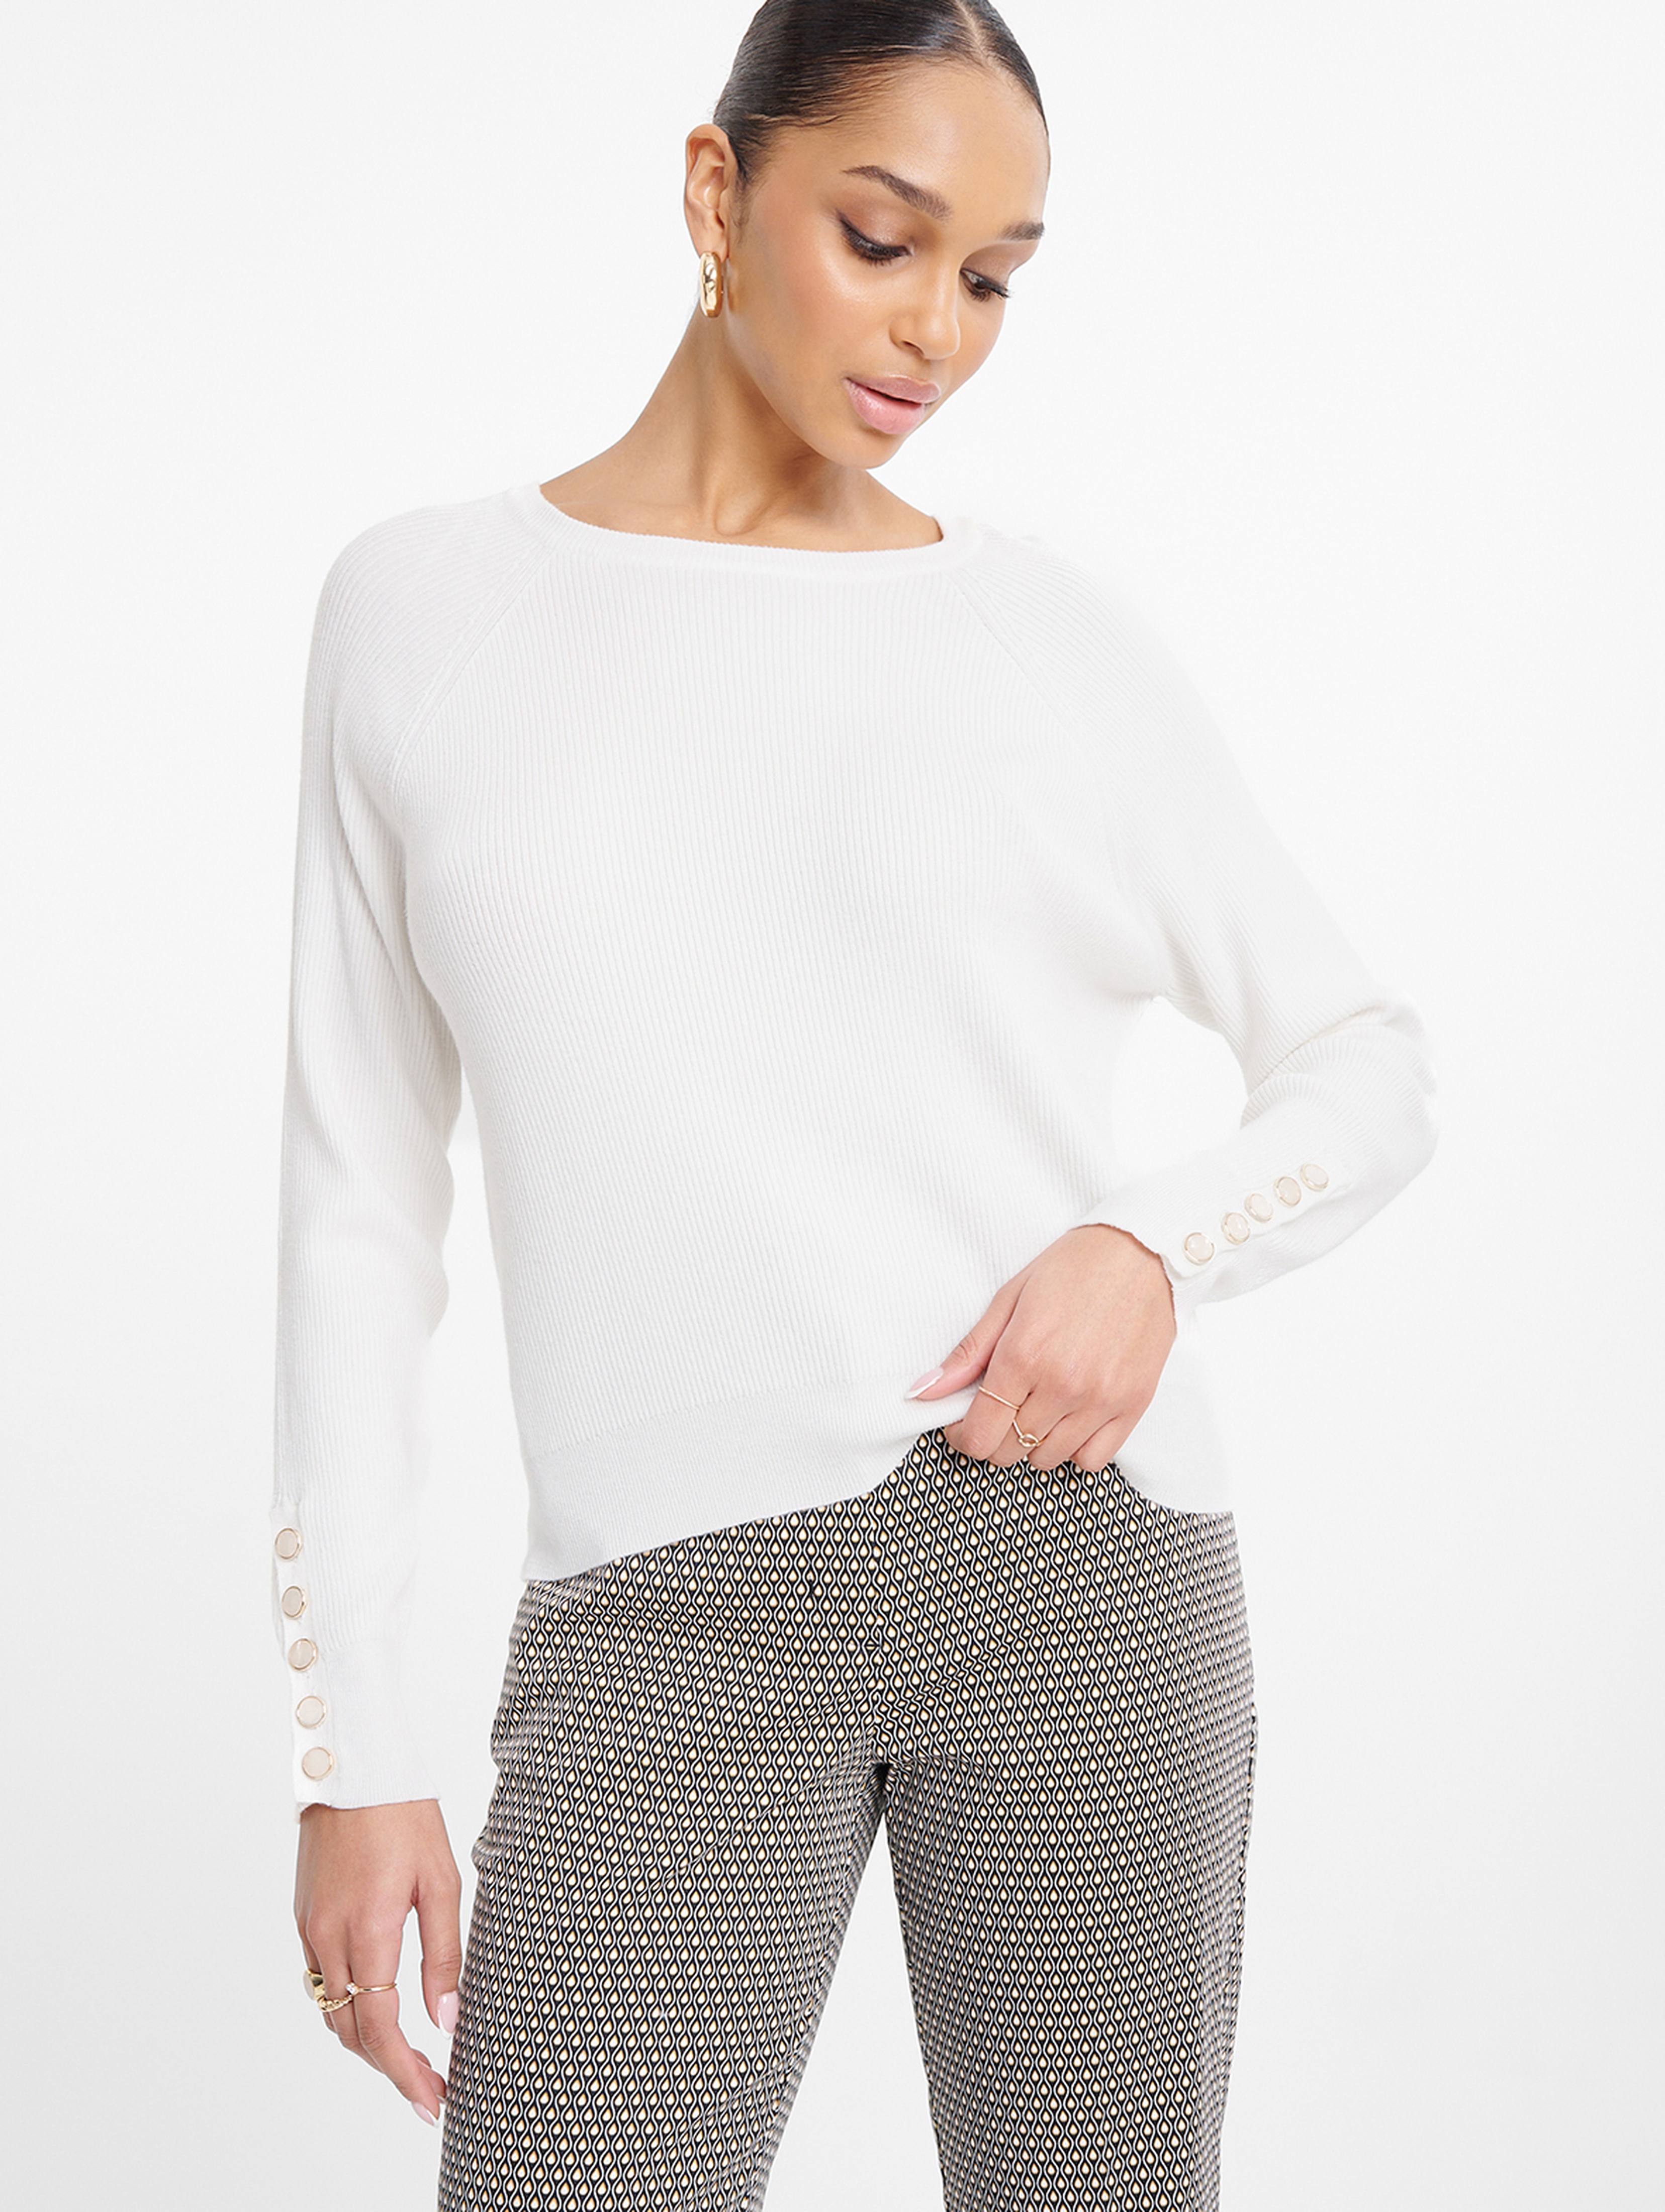 Sweter damski raglan z ozdobnymi guzikami przy rękawach biały